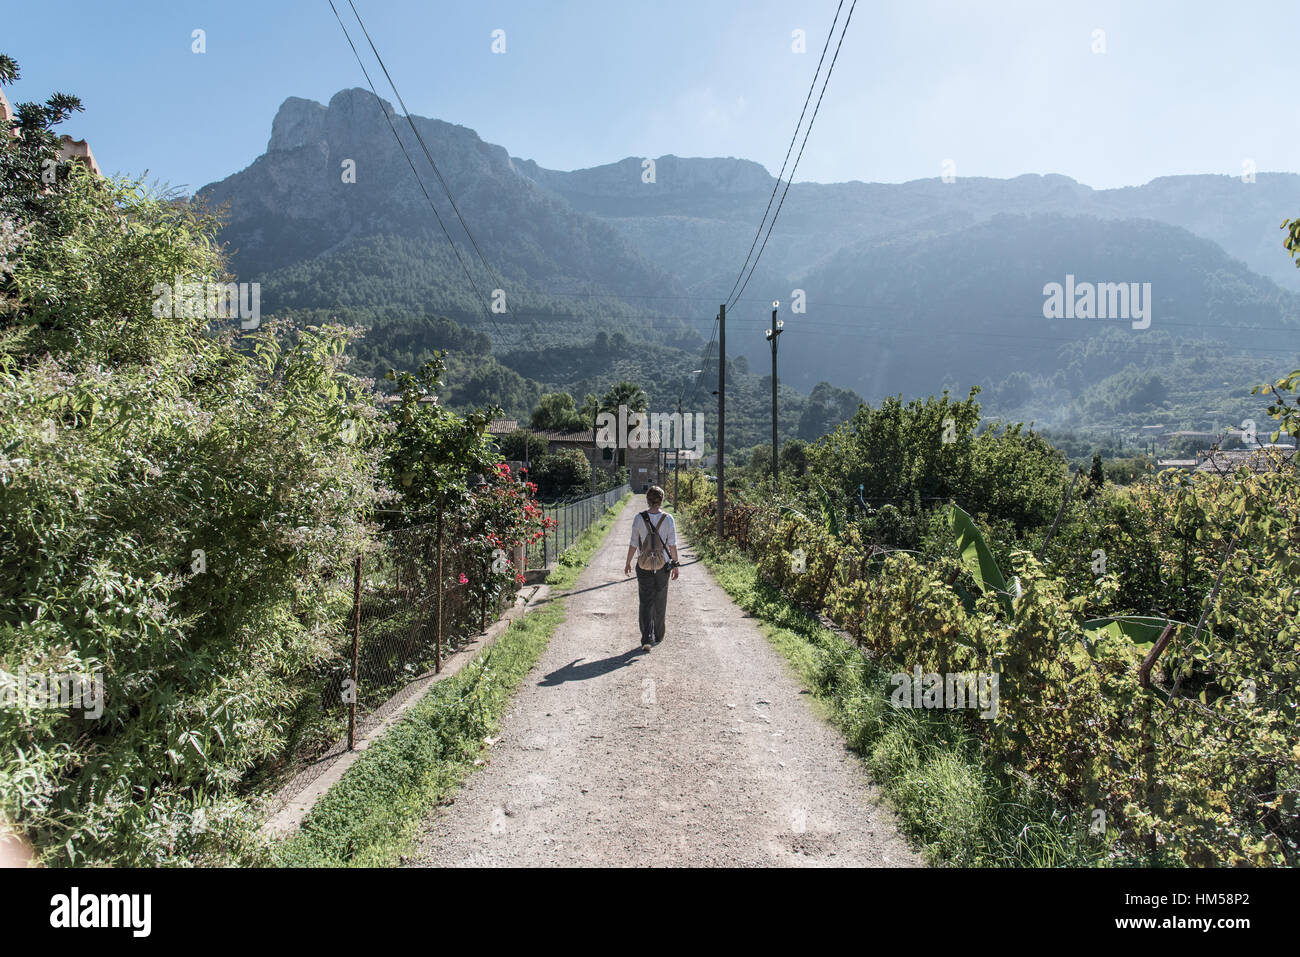 Personne de sexe féminin avec sac à dos, marcher le long de tout droit route étroite à travers la végétation verte avec les montagnes en arrière-plan, près de Soller, Majorque Banque D'Images